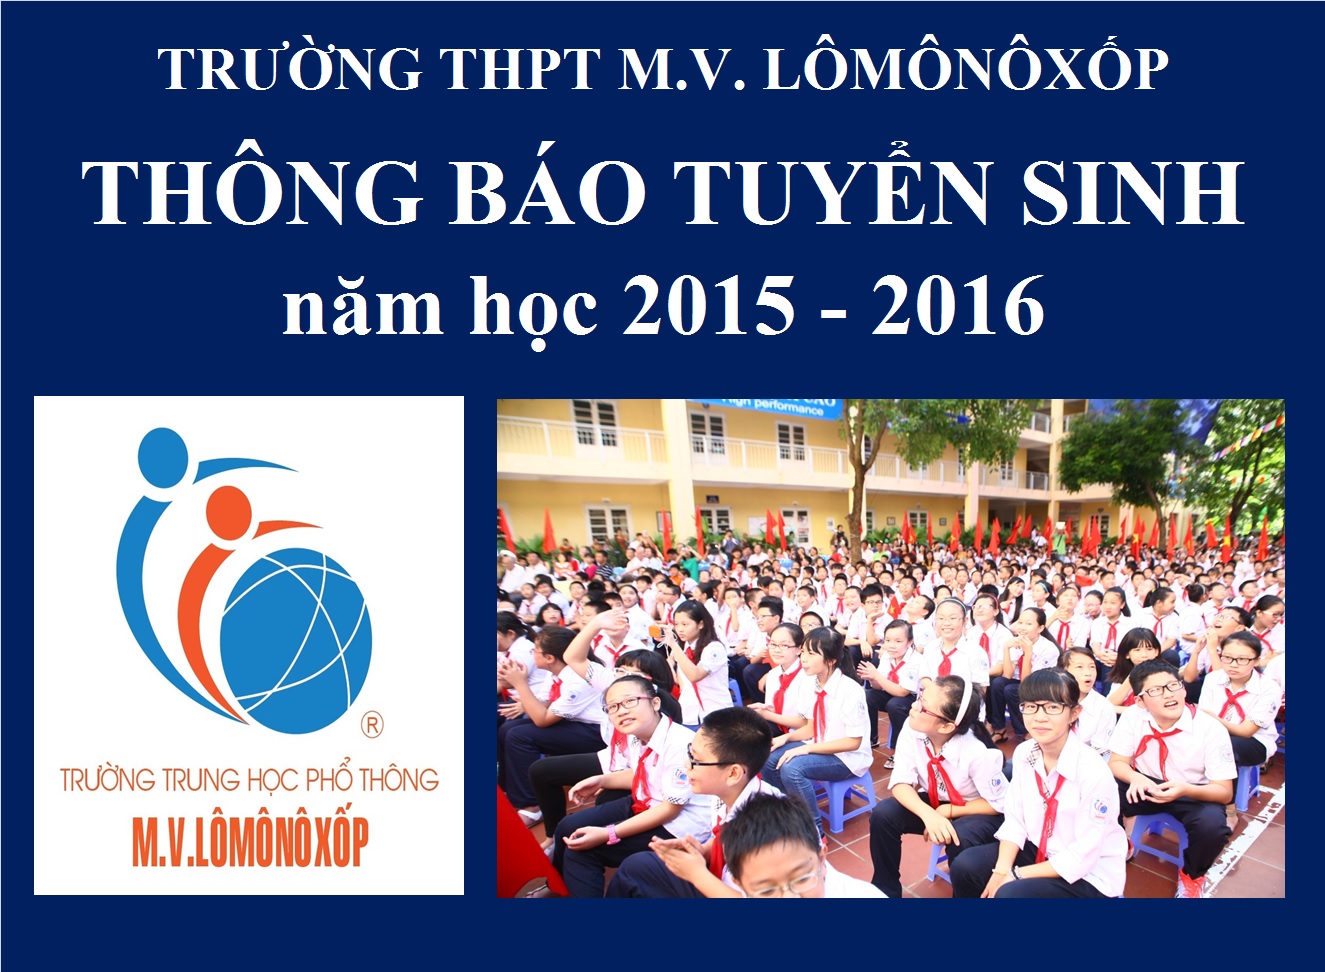 Trường THPT M.V. Lômônôxốp: Thông báo Tuyển sinh năm học 2015 - 2016